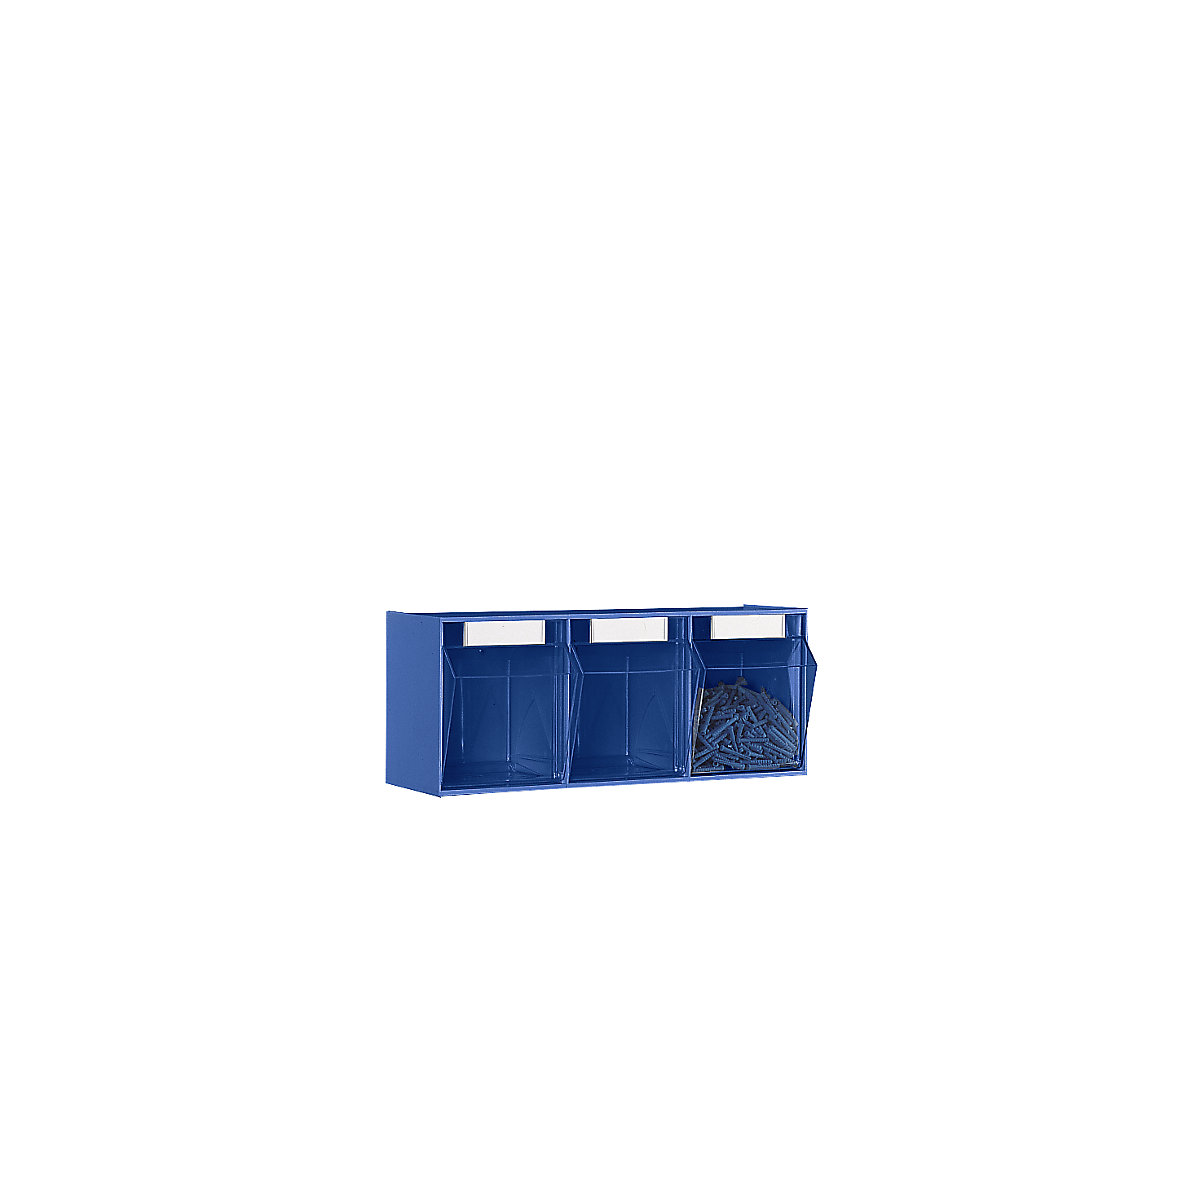 Klappkasten-System, Gehäuse-HxBxT 240 x 600 x 197 mm, 3 Kästen, blau-8